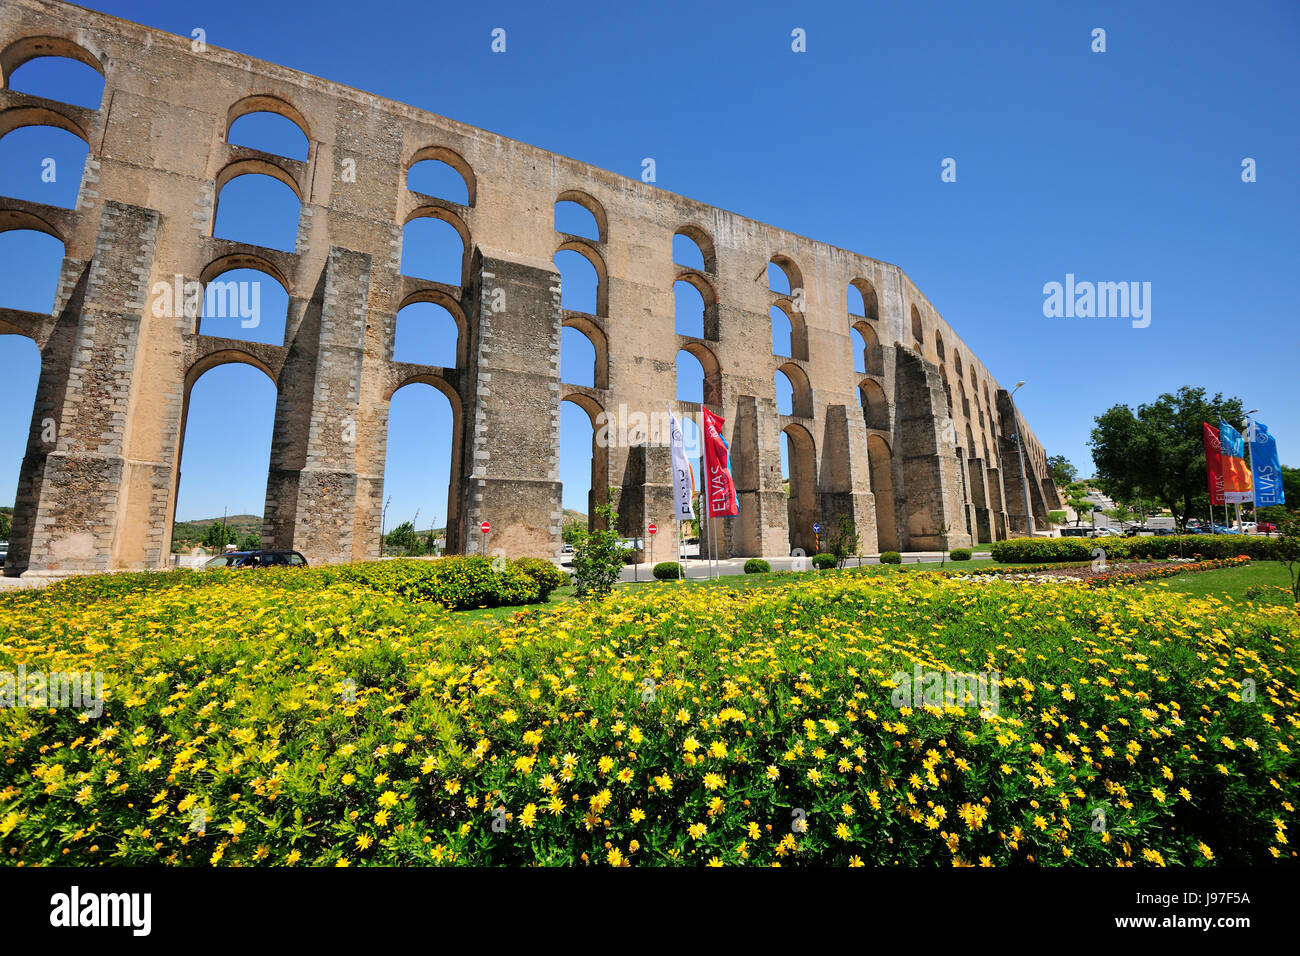 L'aqueduc d'Amoreira datant du 16e siècle, site du patrimoine mondial de l'Unesco. Elvas, Portugal Banque D'Images